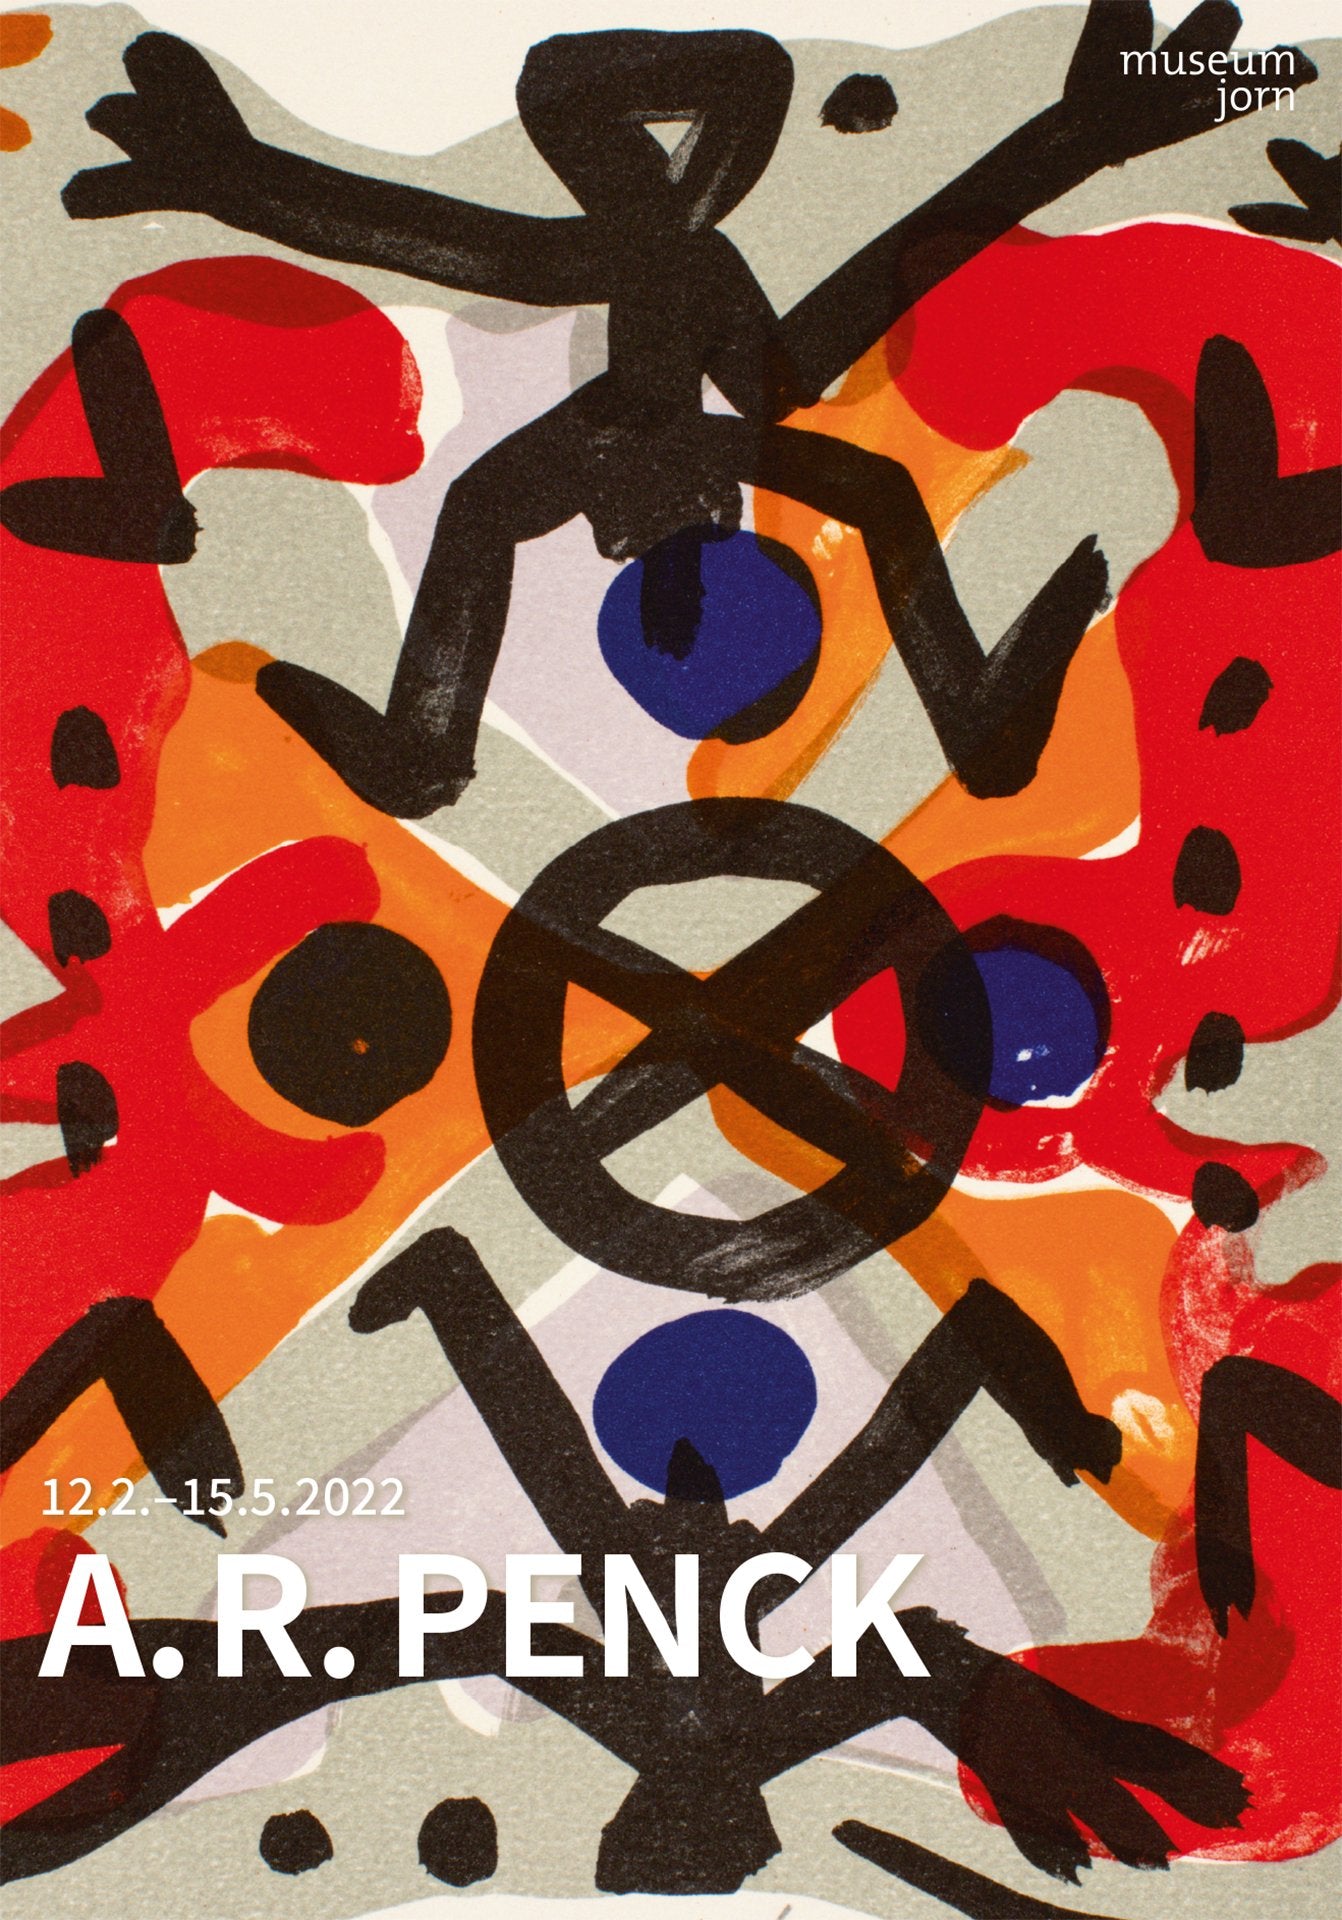 A.R. PENCK - Kopenhagen-Suite, 1995